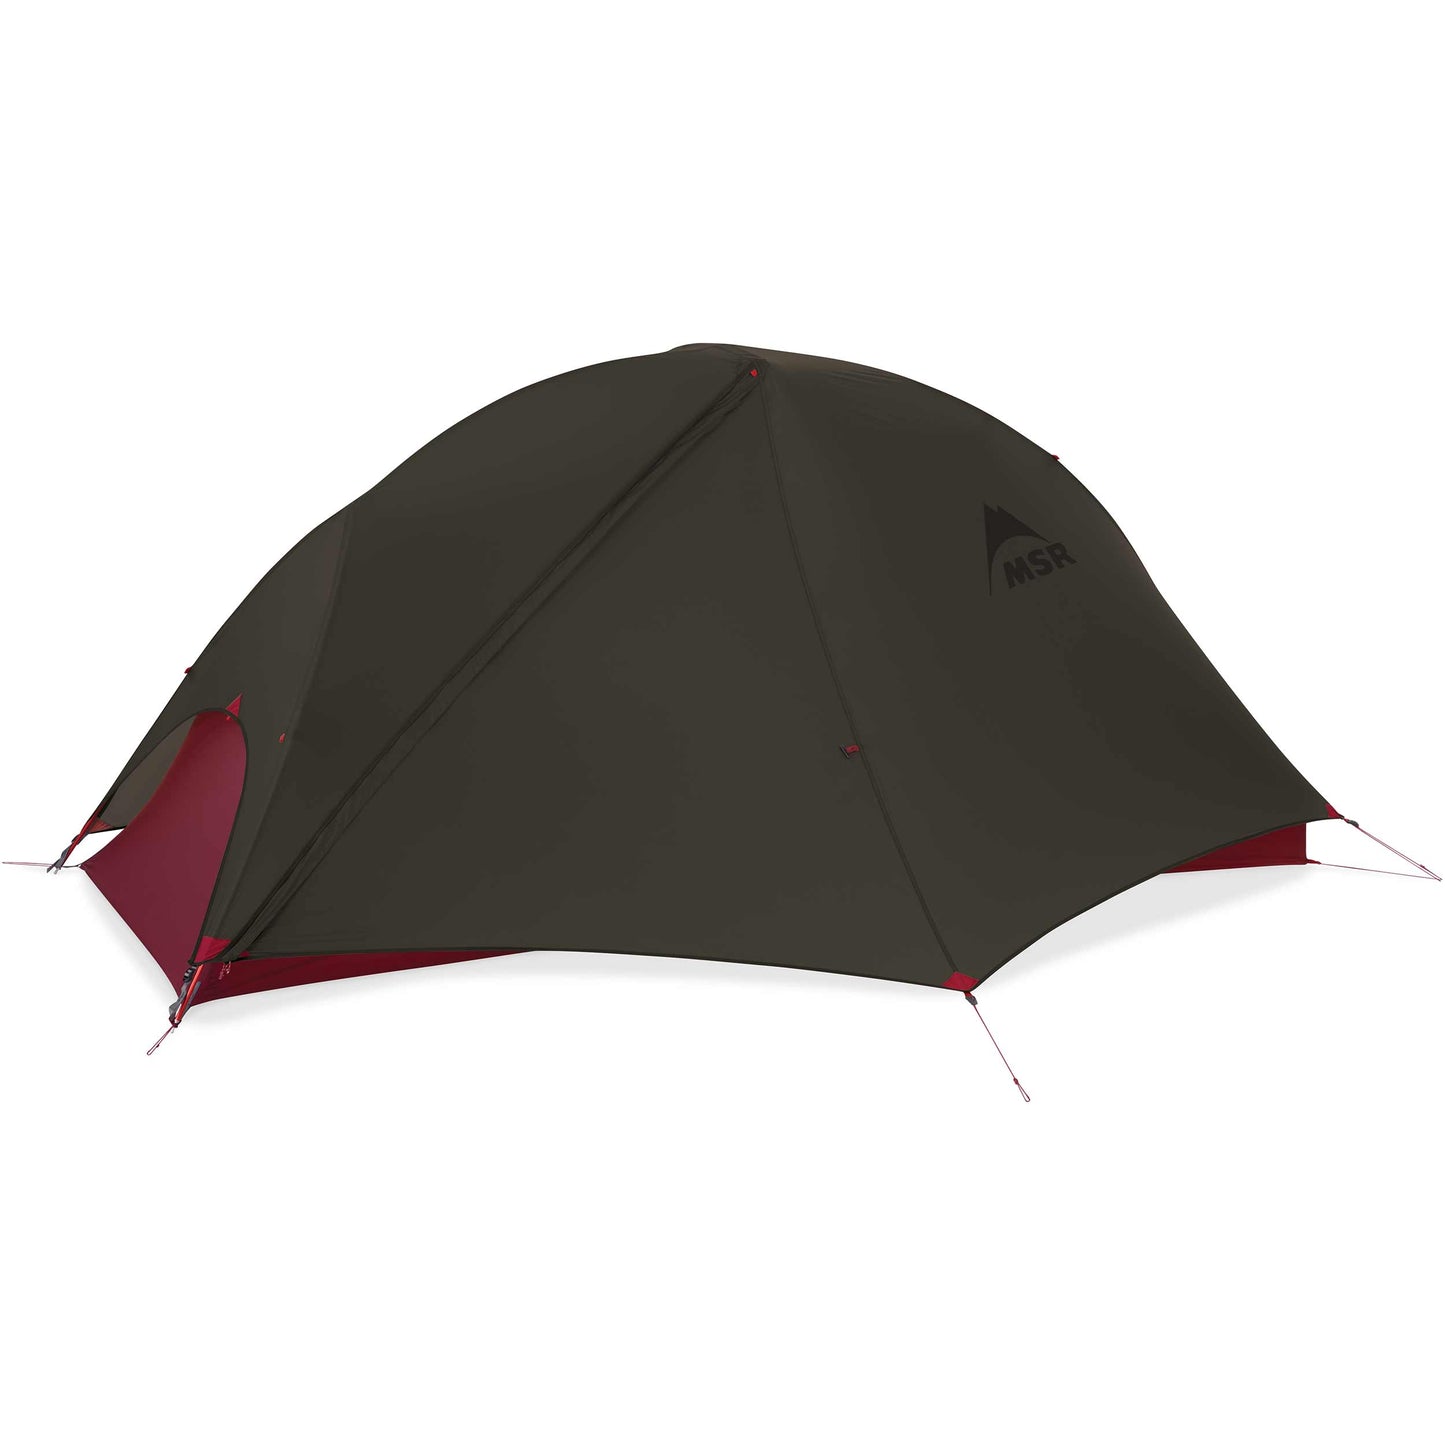 Freelite™ 1 Ultralight Backpacking Tent